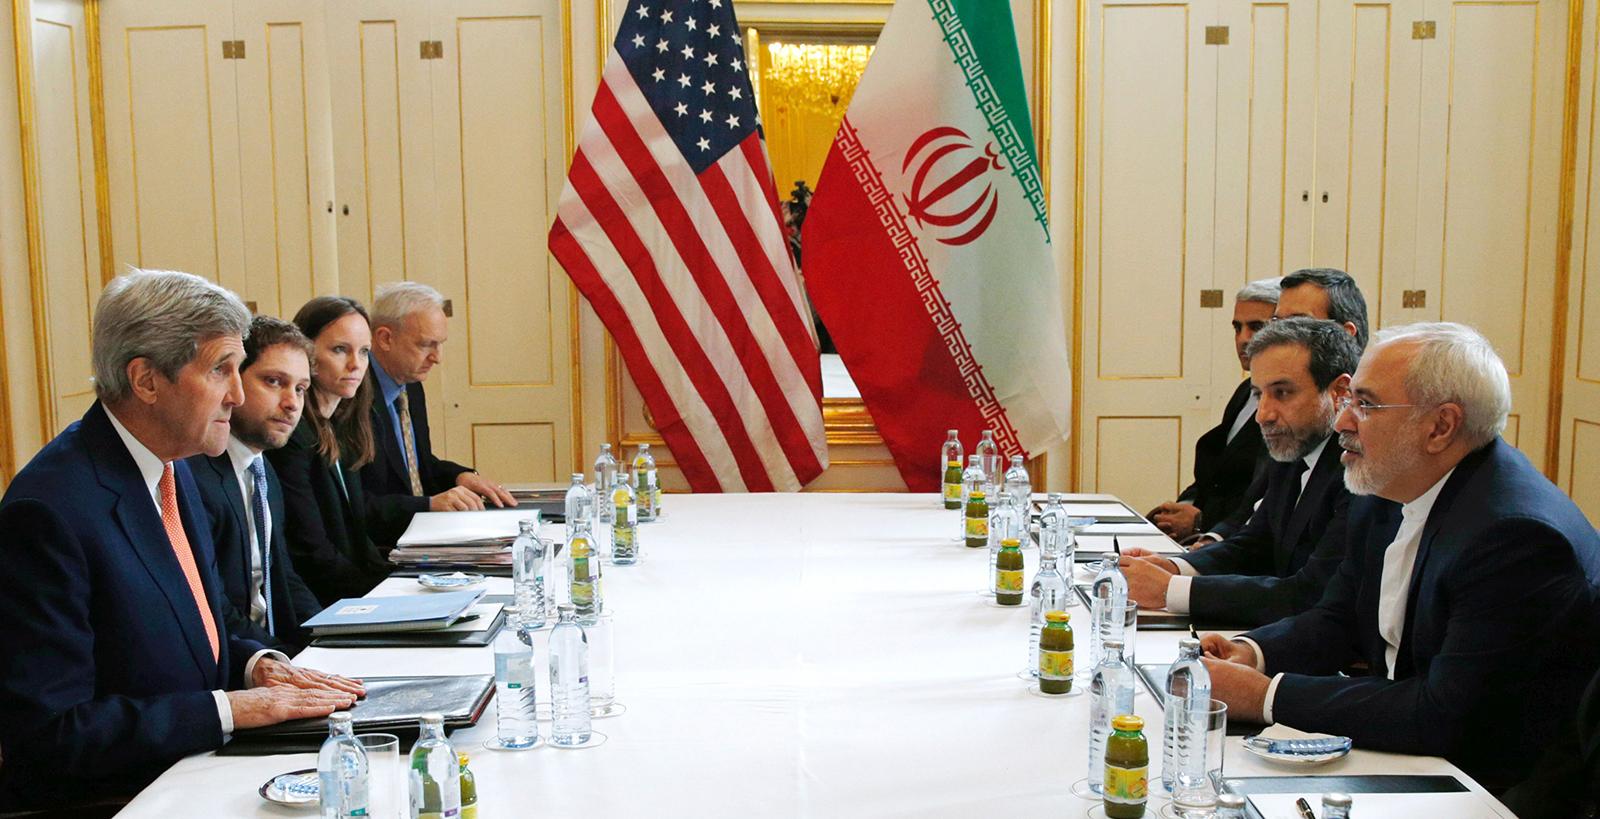 USA:s utrikesminister John Kerry vid förhandlingsbordet i österrikiska Wien med den iranske utrikesministern Javad Zarif.